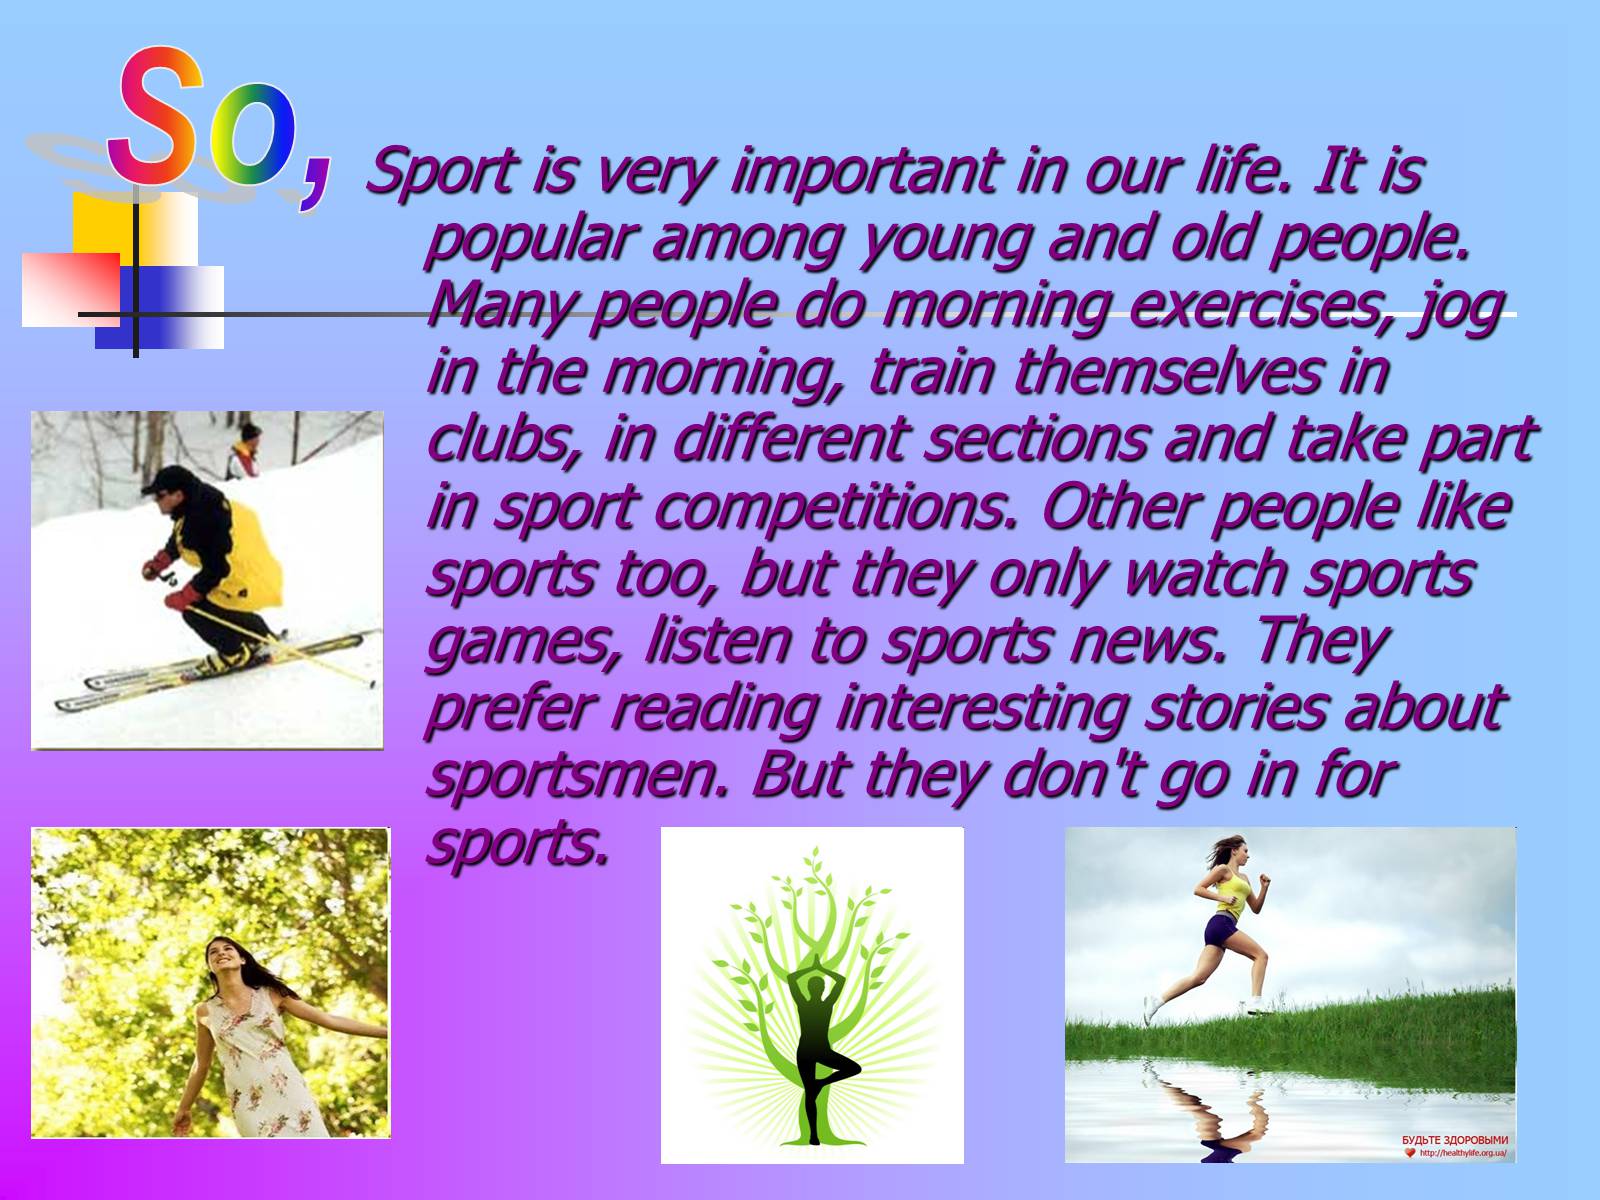 Sports in my life. Презентация на тему спорт. Проект по английскому языку на тему спорт. Sport in our Life презентация. Презентация про спорт на английском.